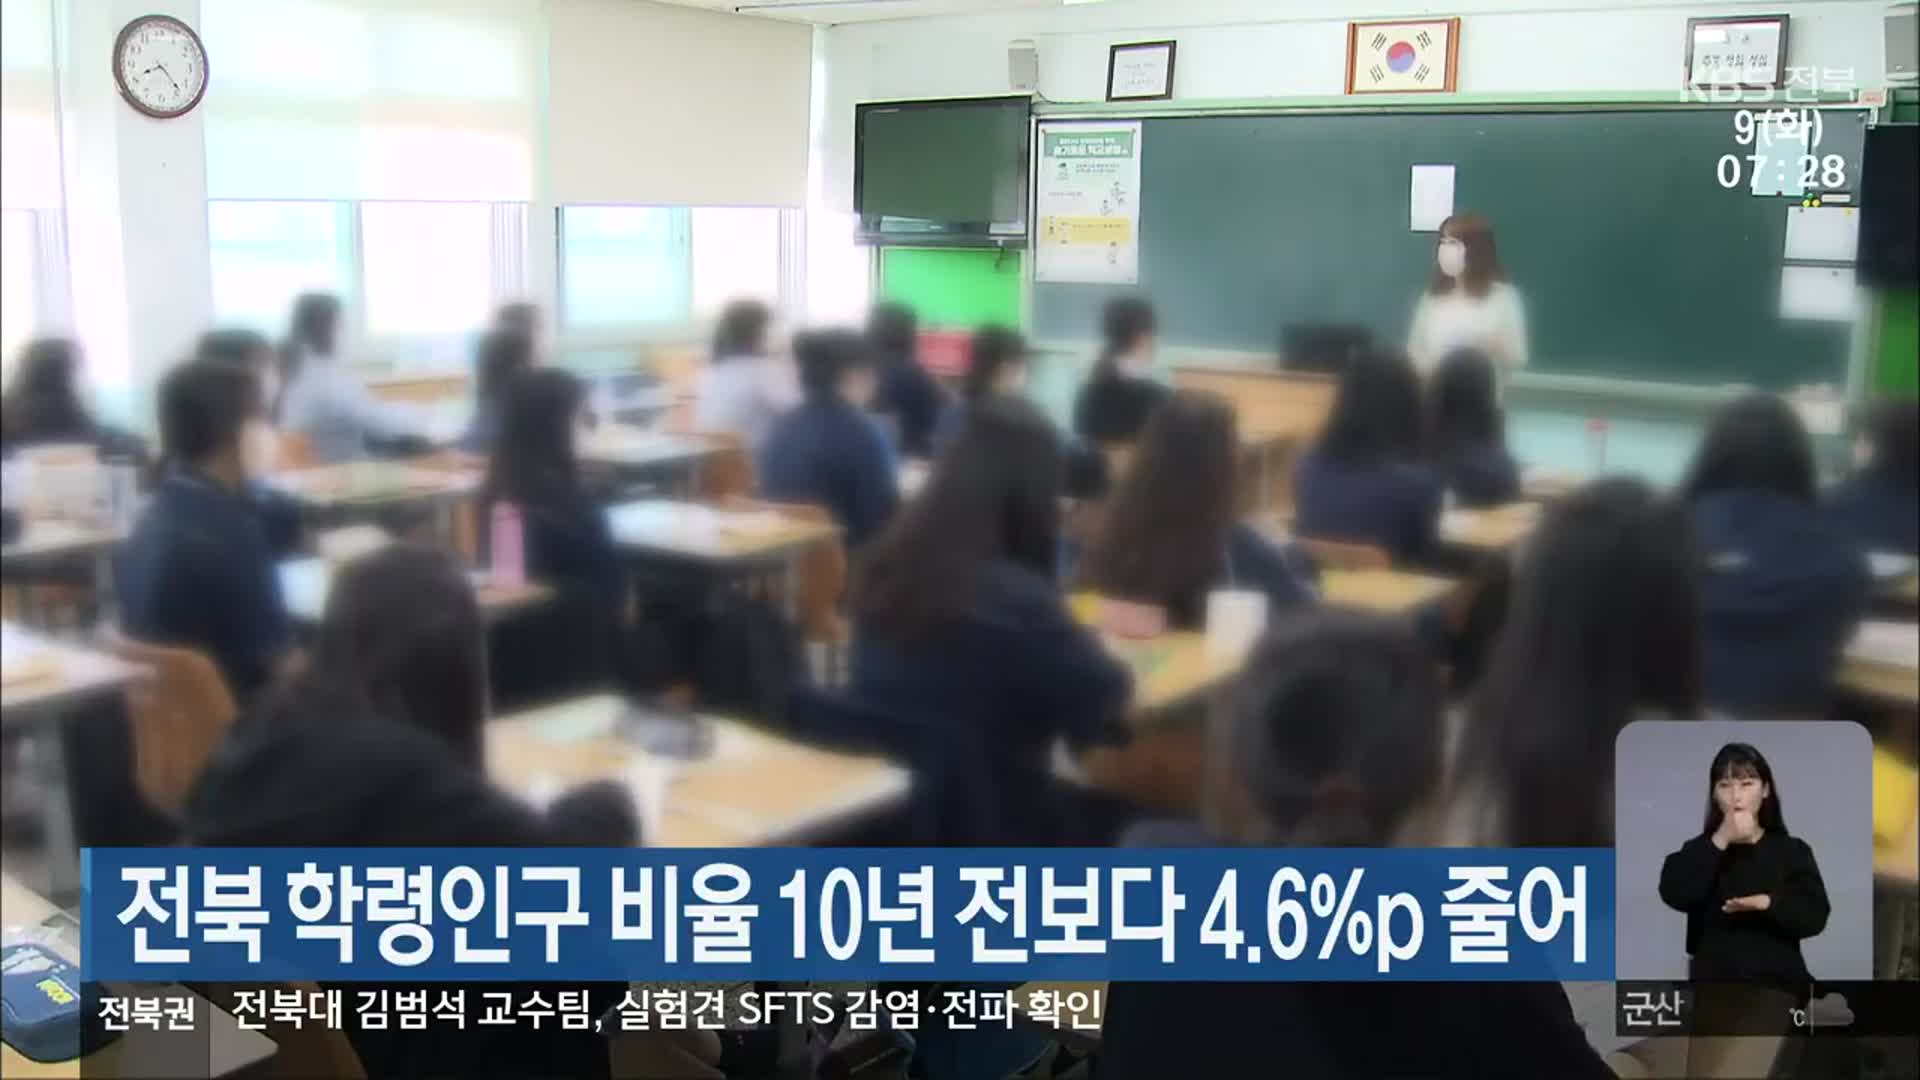 전북 학령인구 비율 10년 전보다 4.6%p 줄어